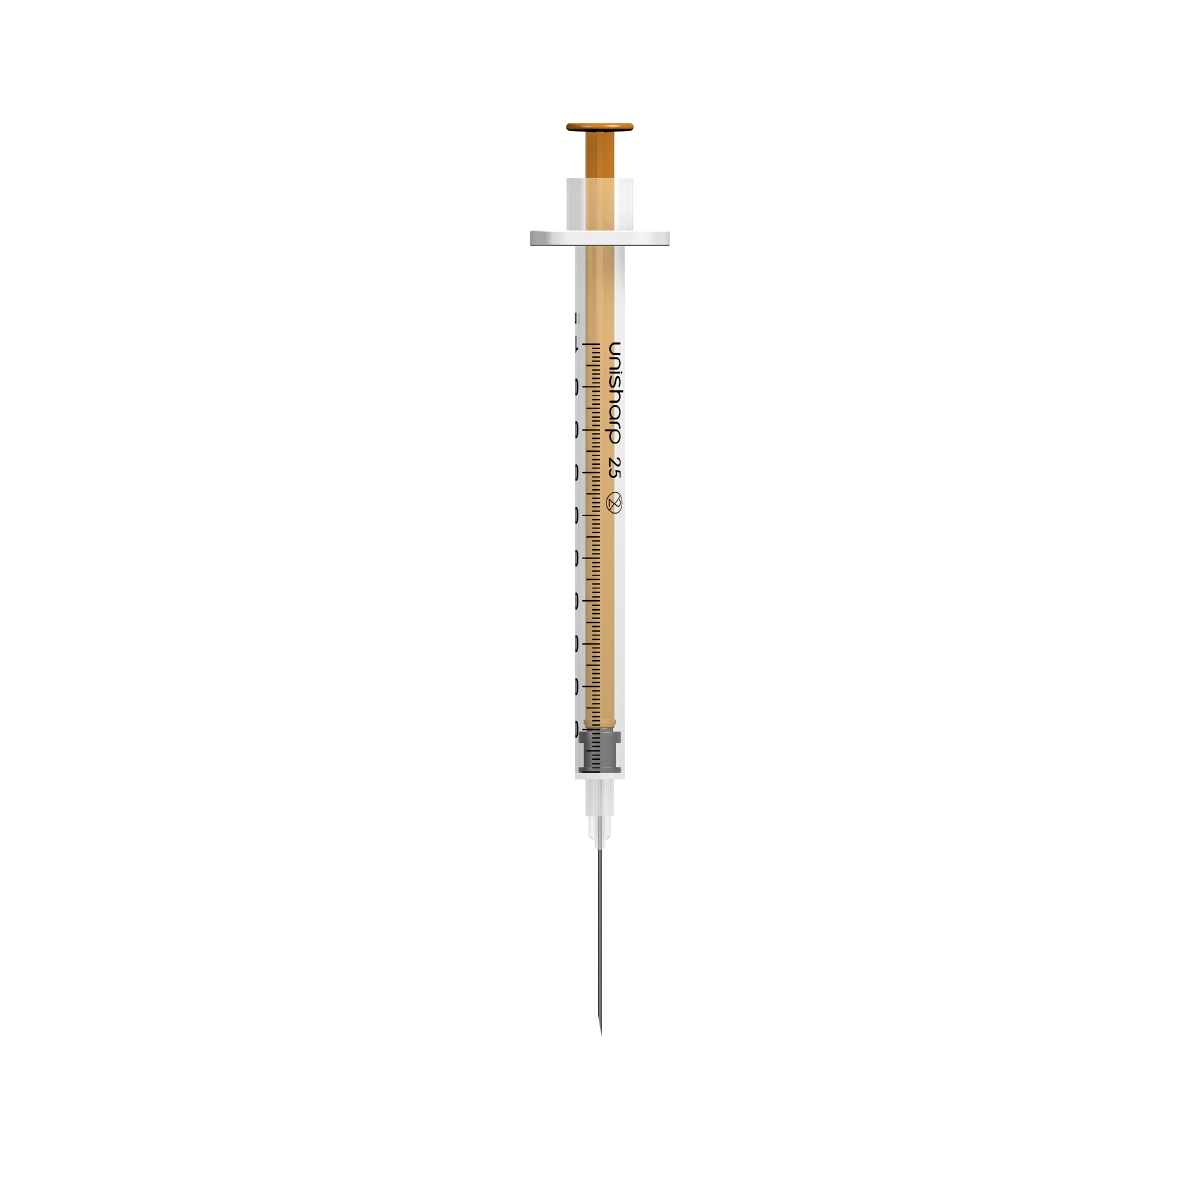 NEW! Unisharp 1mL 25G (25mm) fixed needle syringe